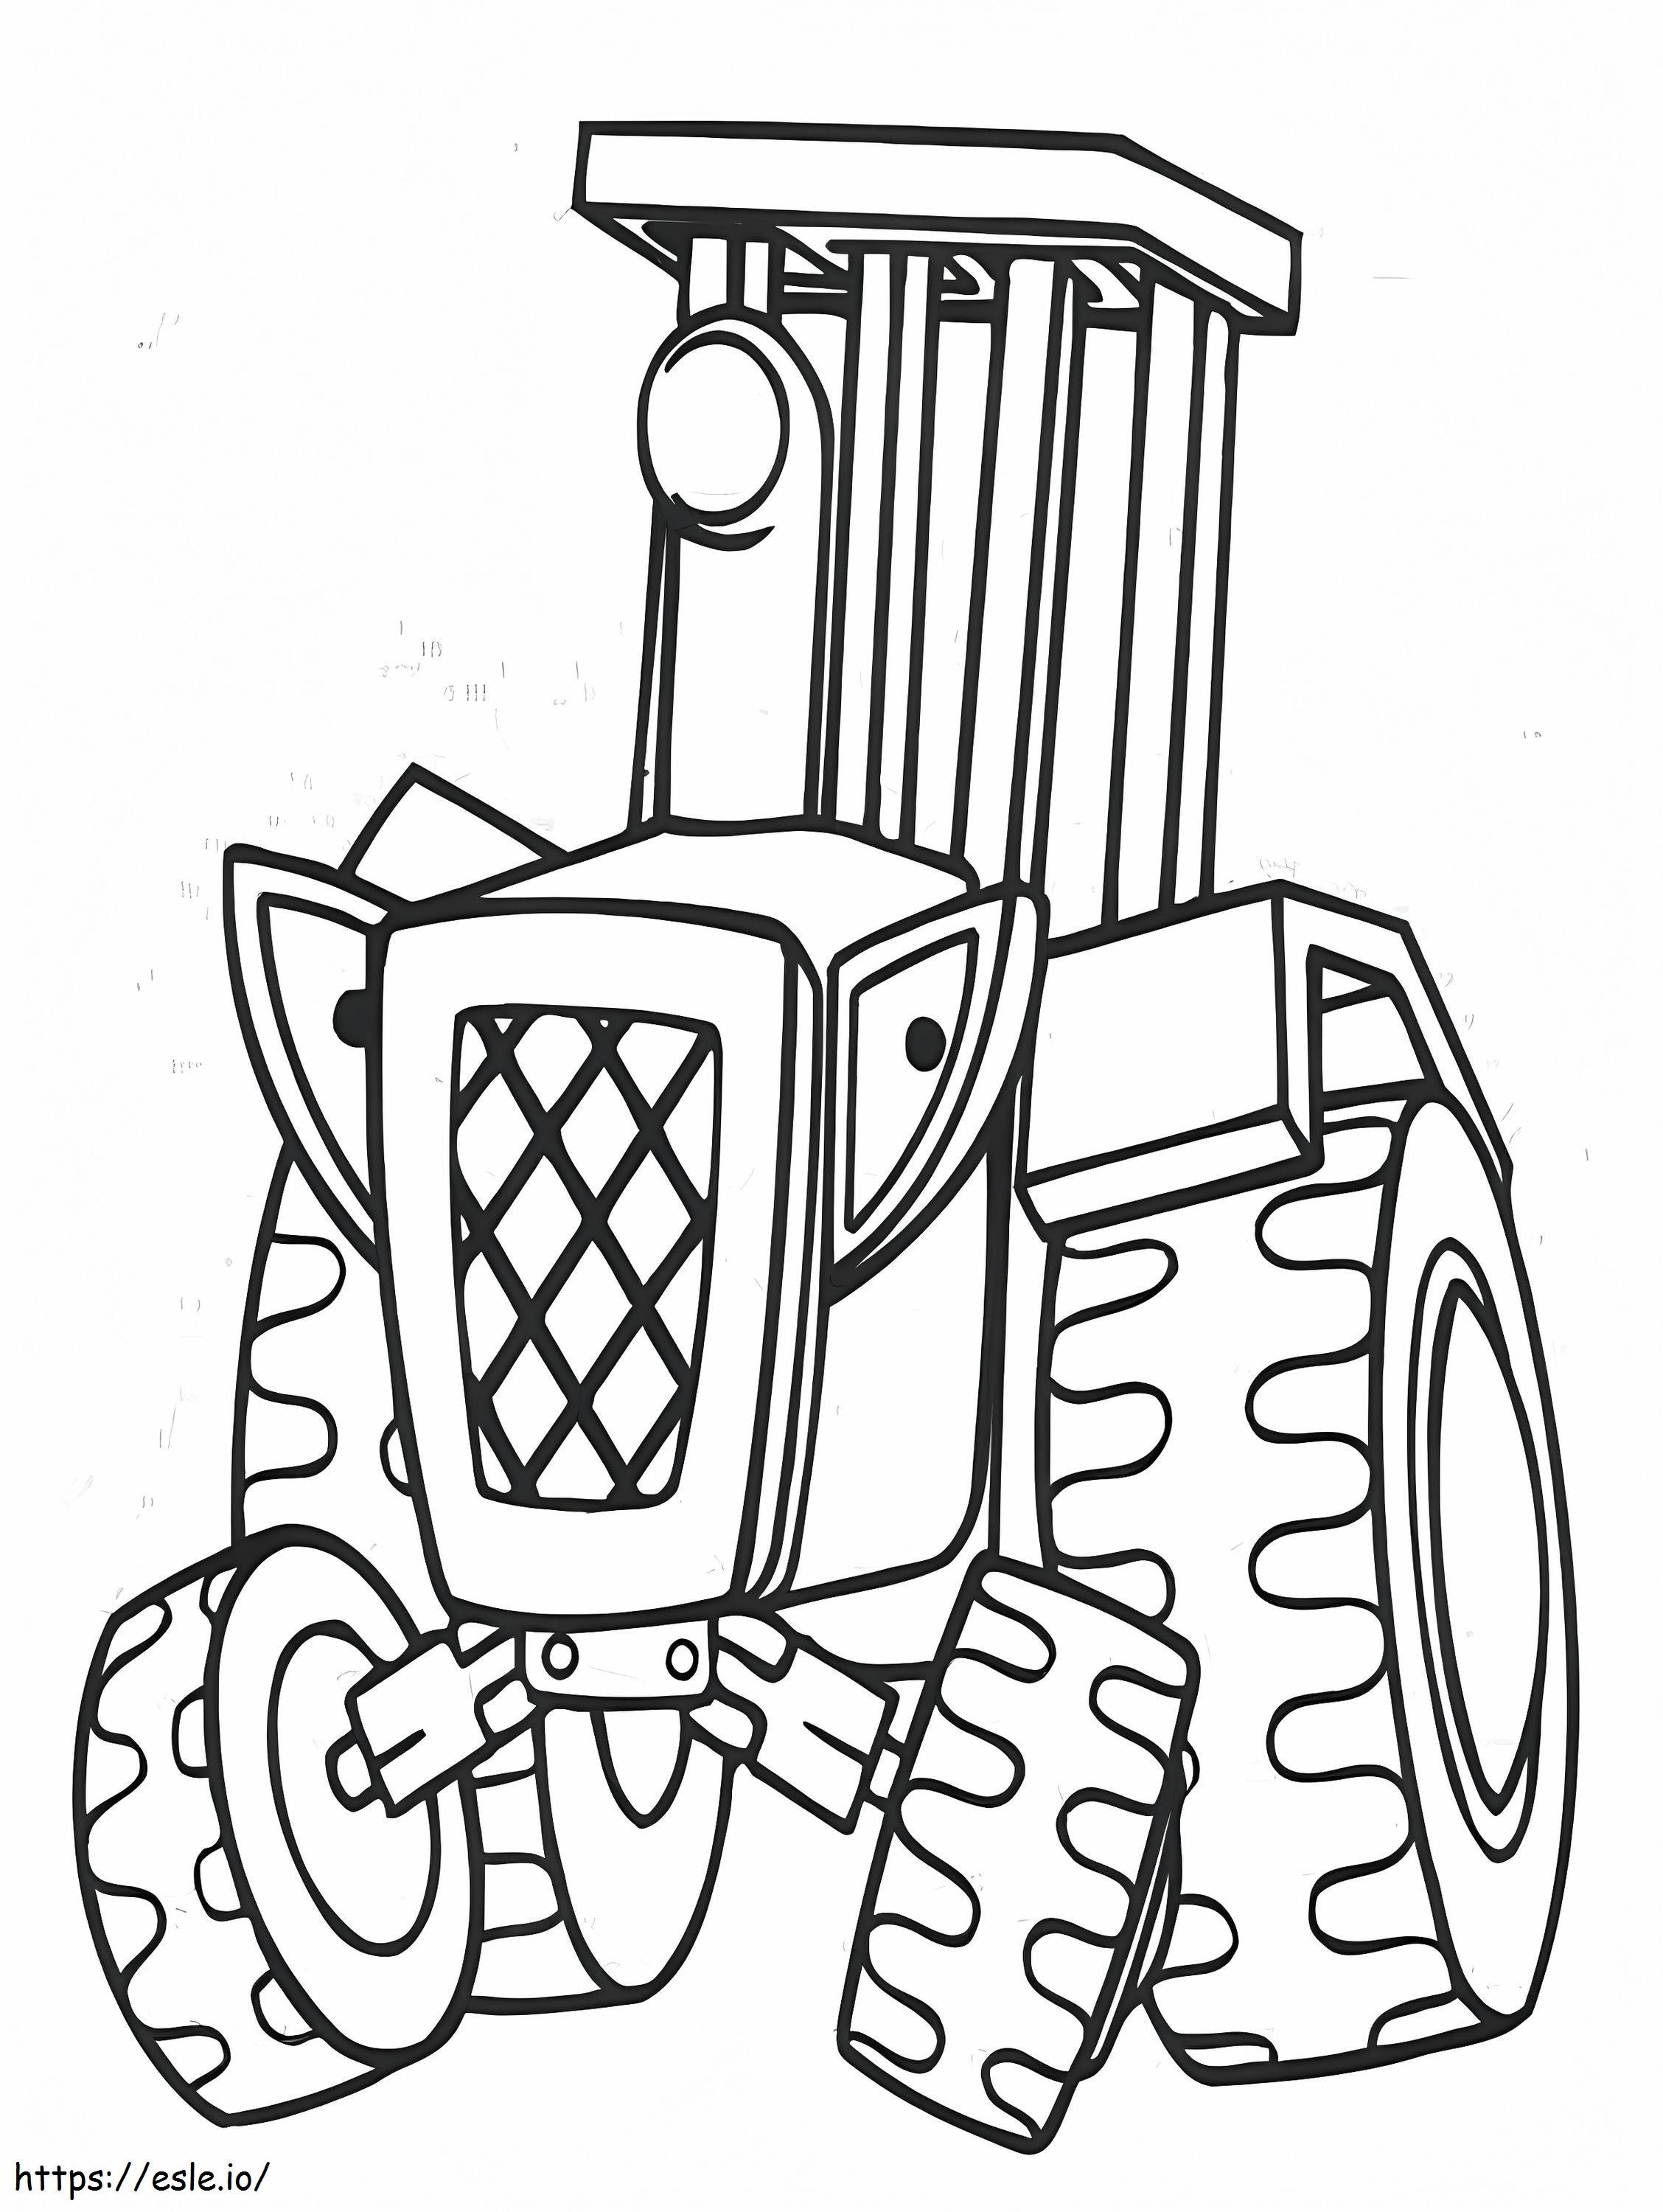 Coloriage Tracteur de dessin animé à imprimer dessin